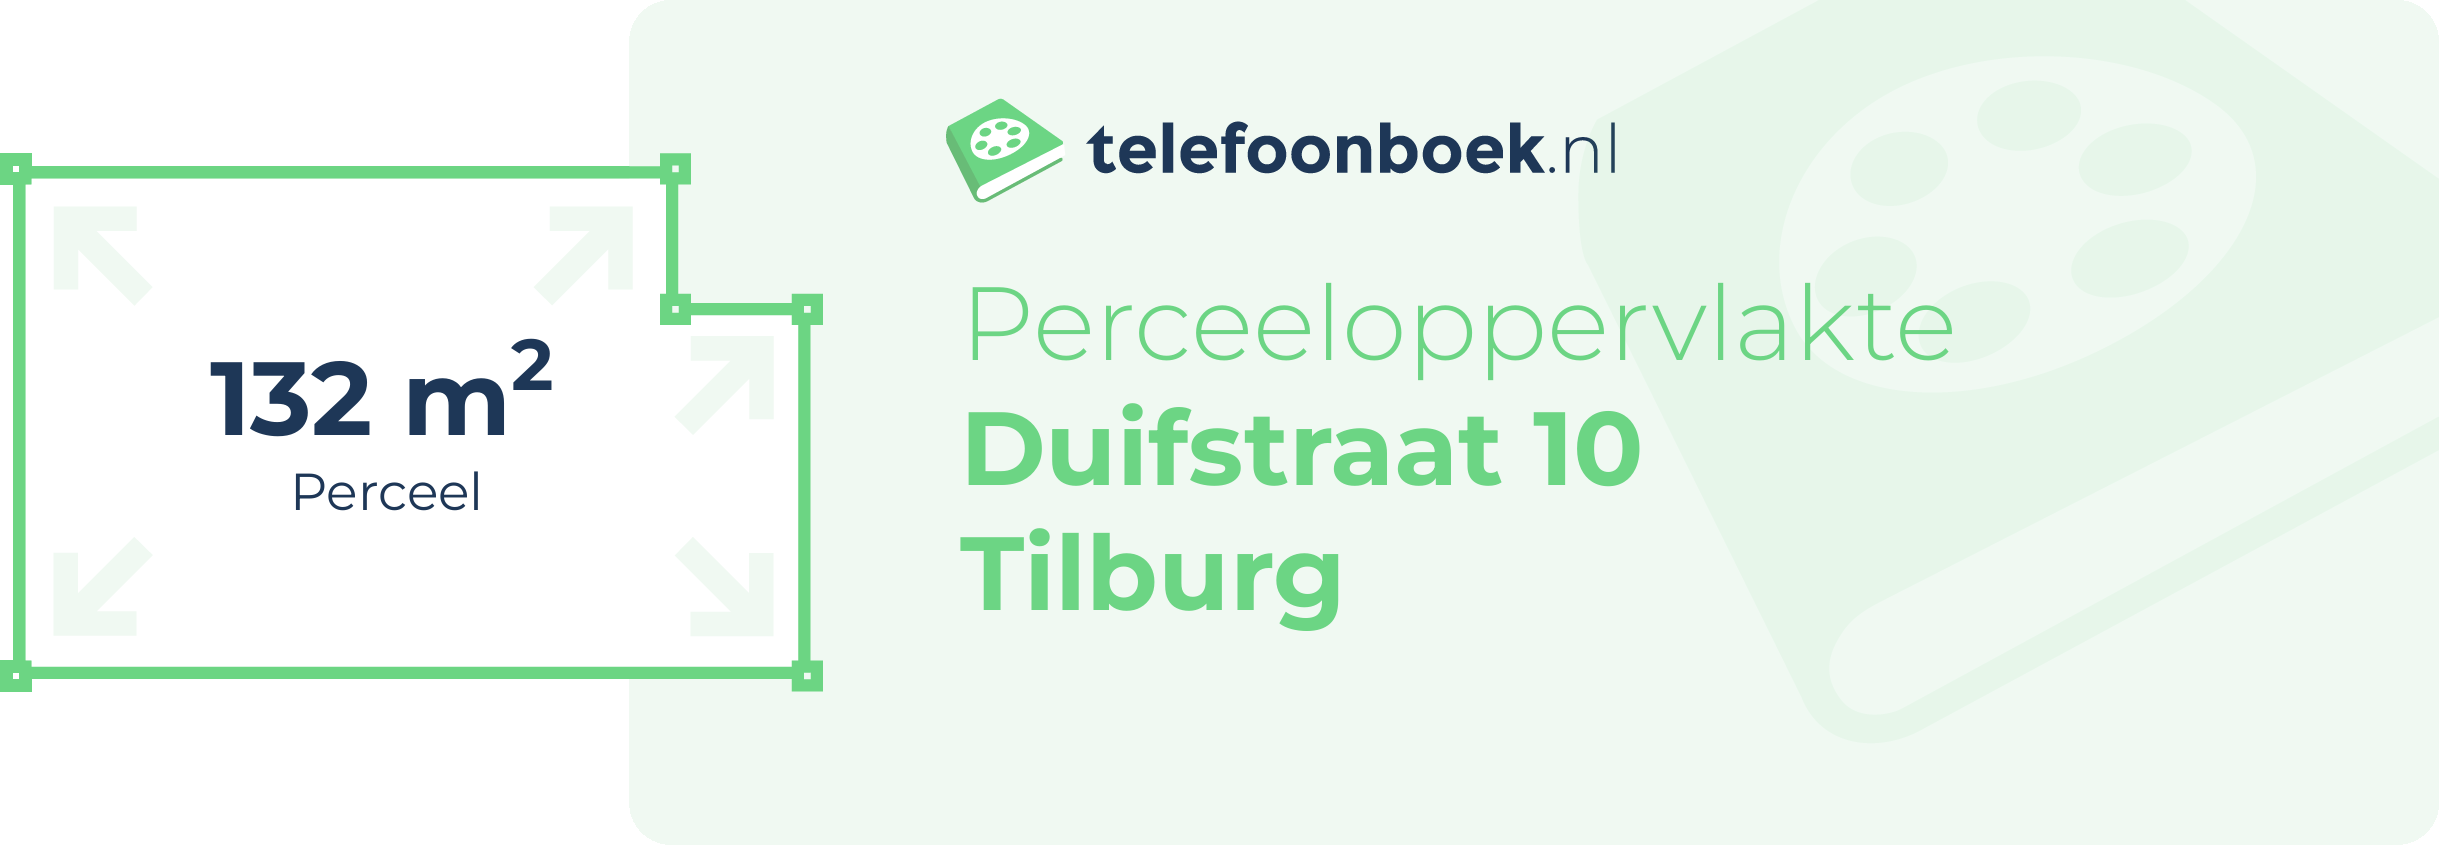 Perceeloppervlakte Duifstraat 10 Tilburg